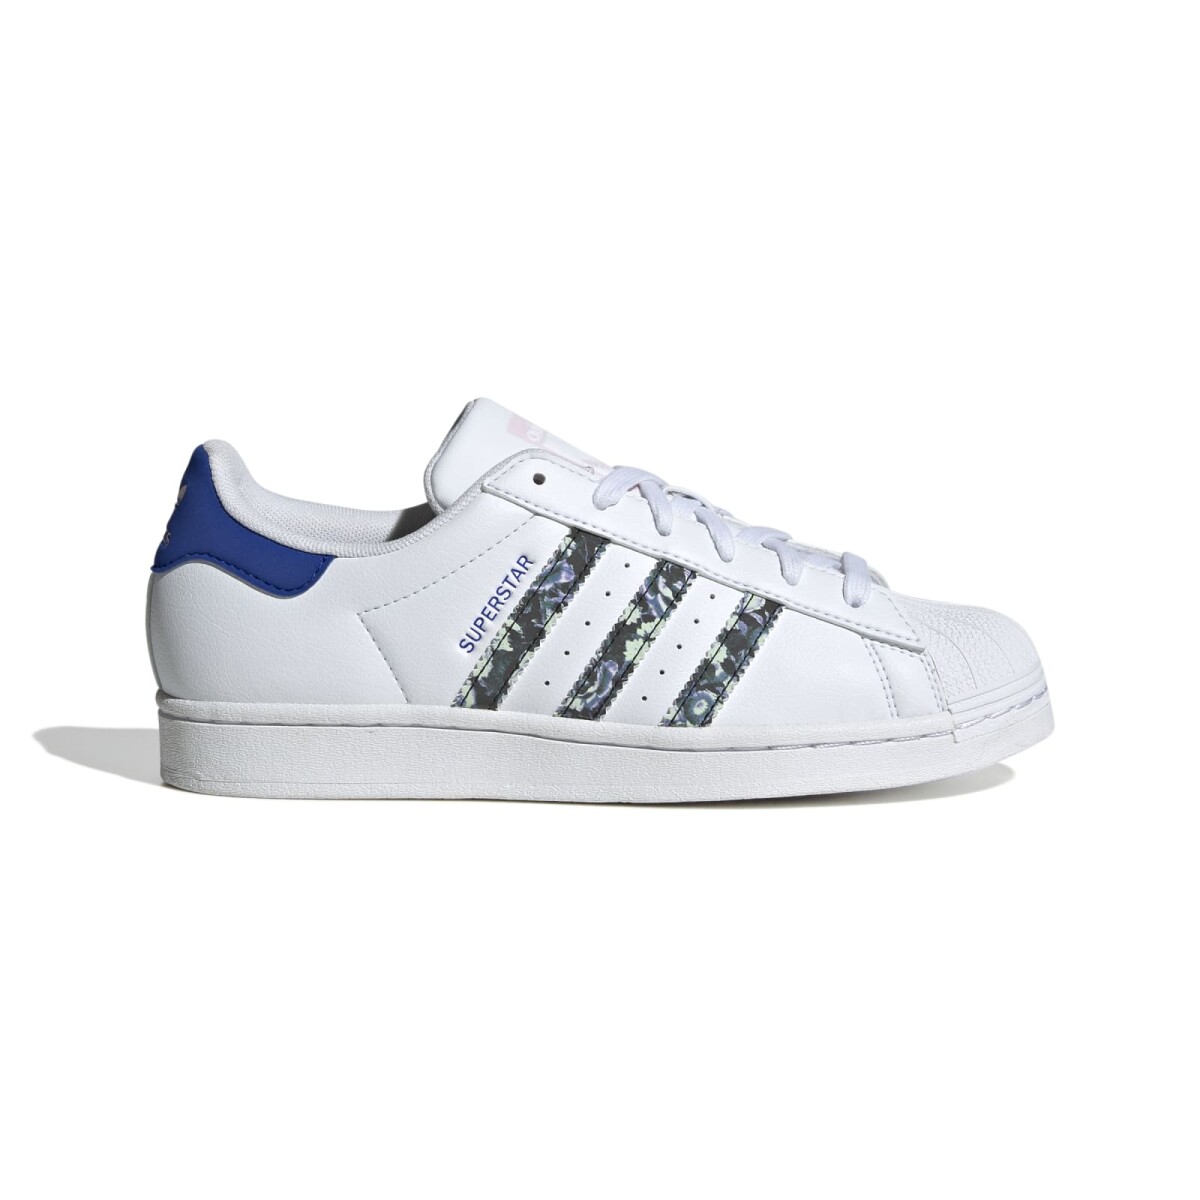 Championes Adidas Unisex - Superstar. - ADIE9638 - WHITE/CLEAR PINK/LUCID BLUE 